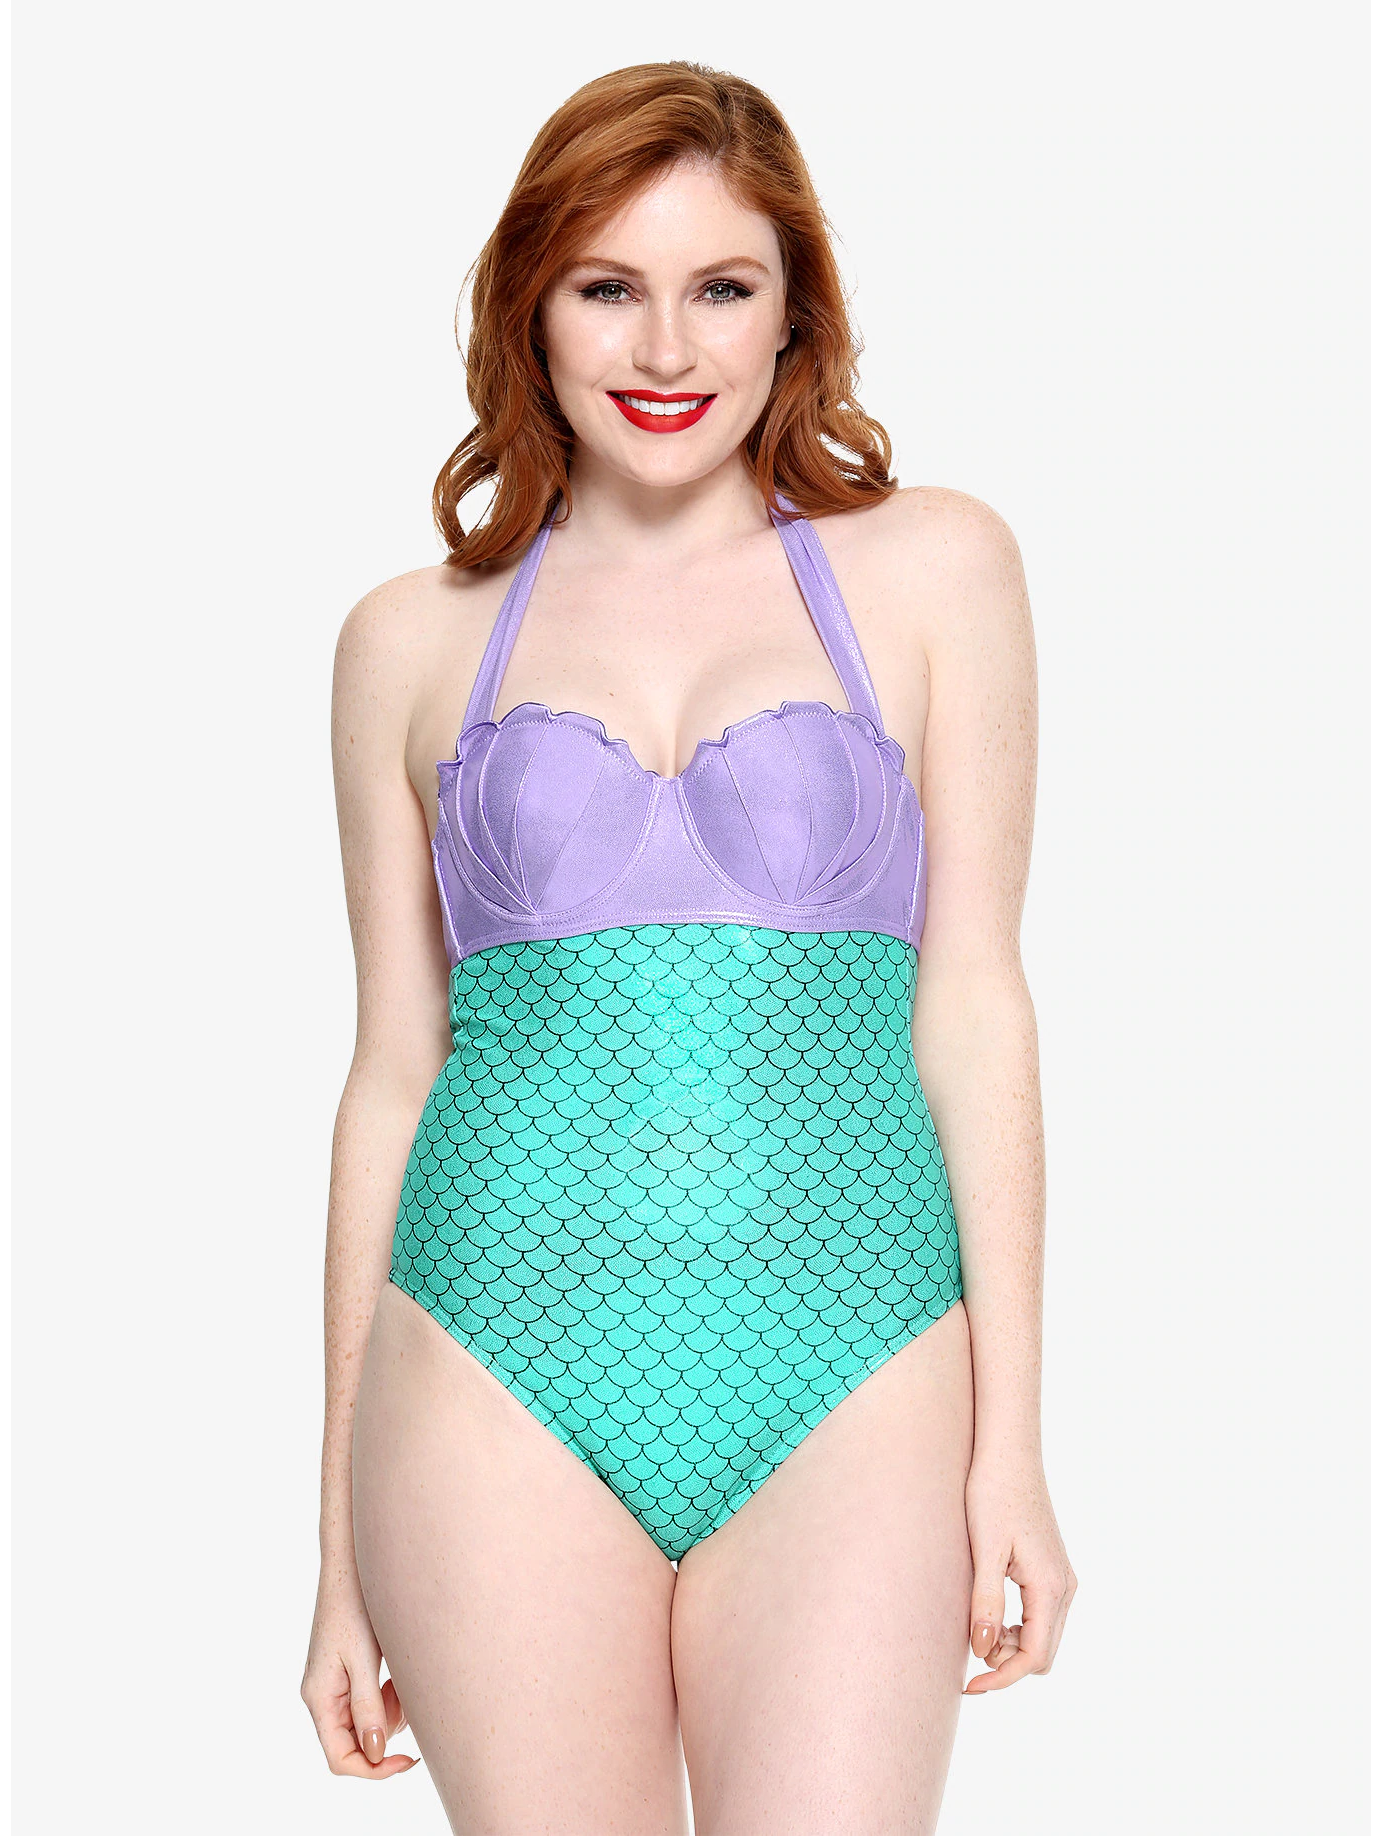 Disney Ariel The Little Mermaid Two Piece Bathing Suit Girls 2T Swimwear  NWT